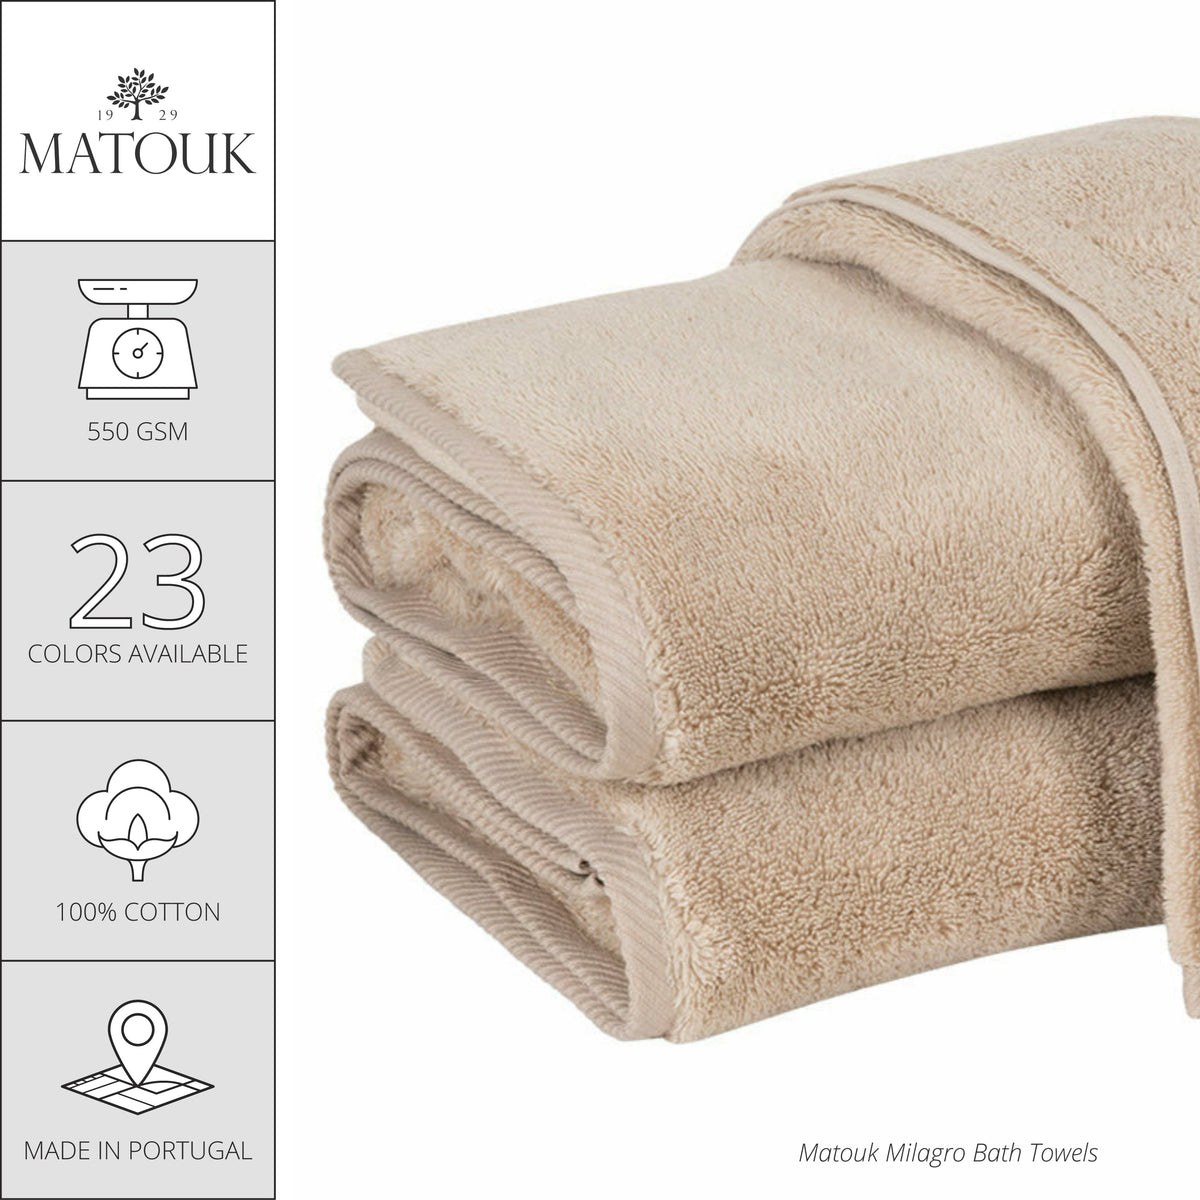 Matouk Milagro Bath Towels and Mats - Aqua